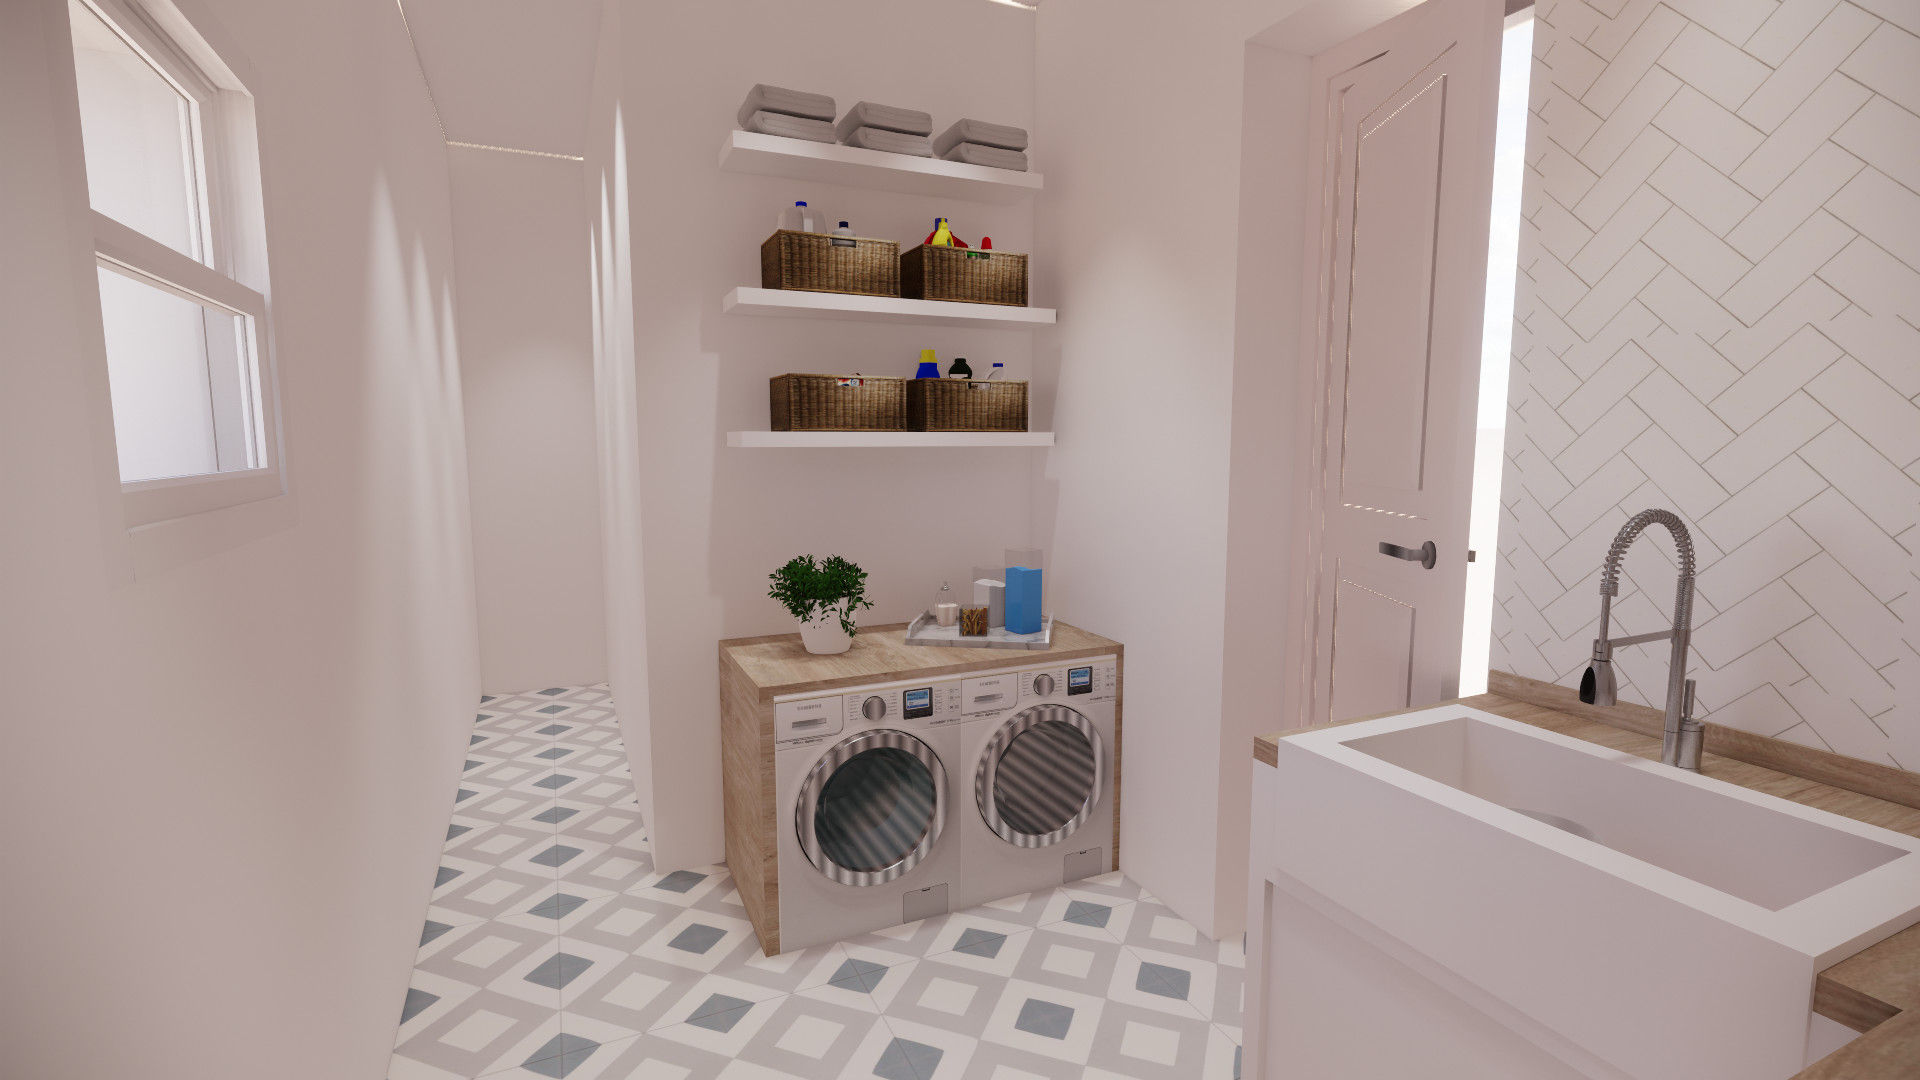 Interior de lavadero con lavadora y estantes contemporáneos